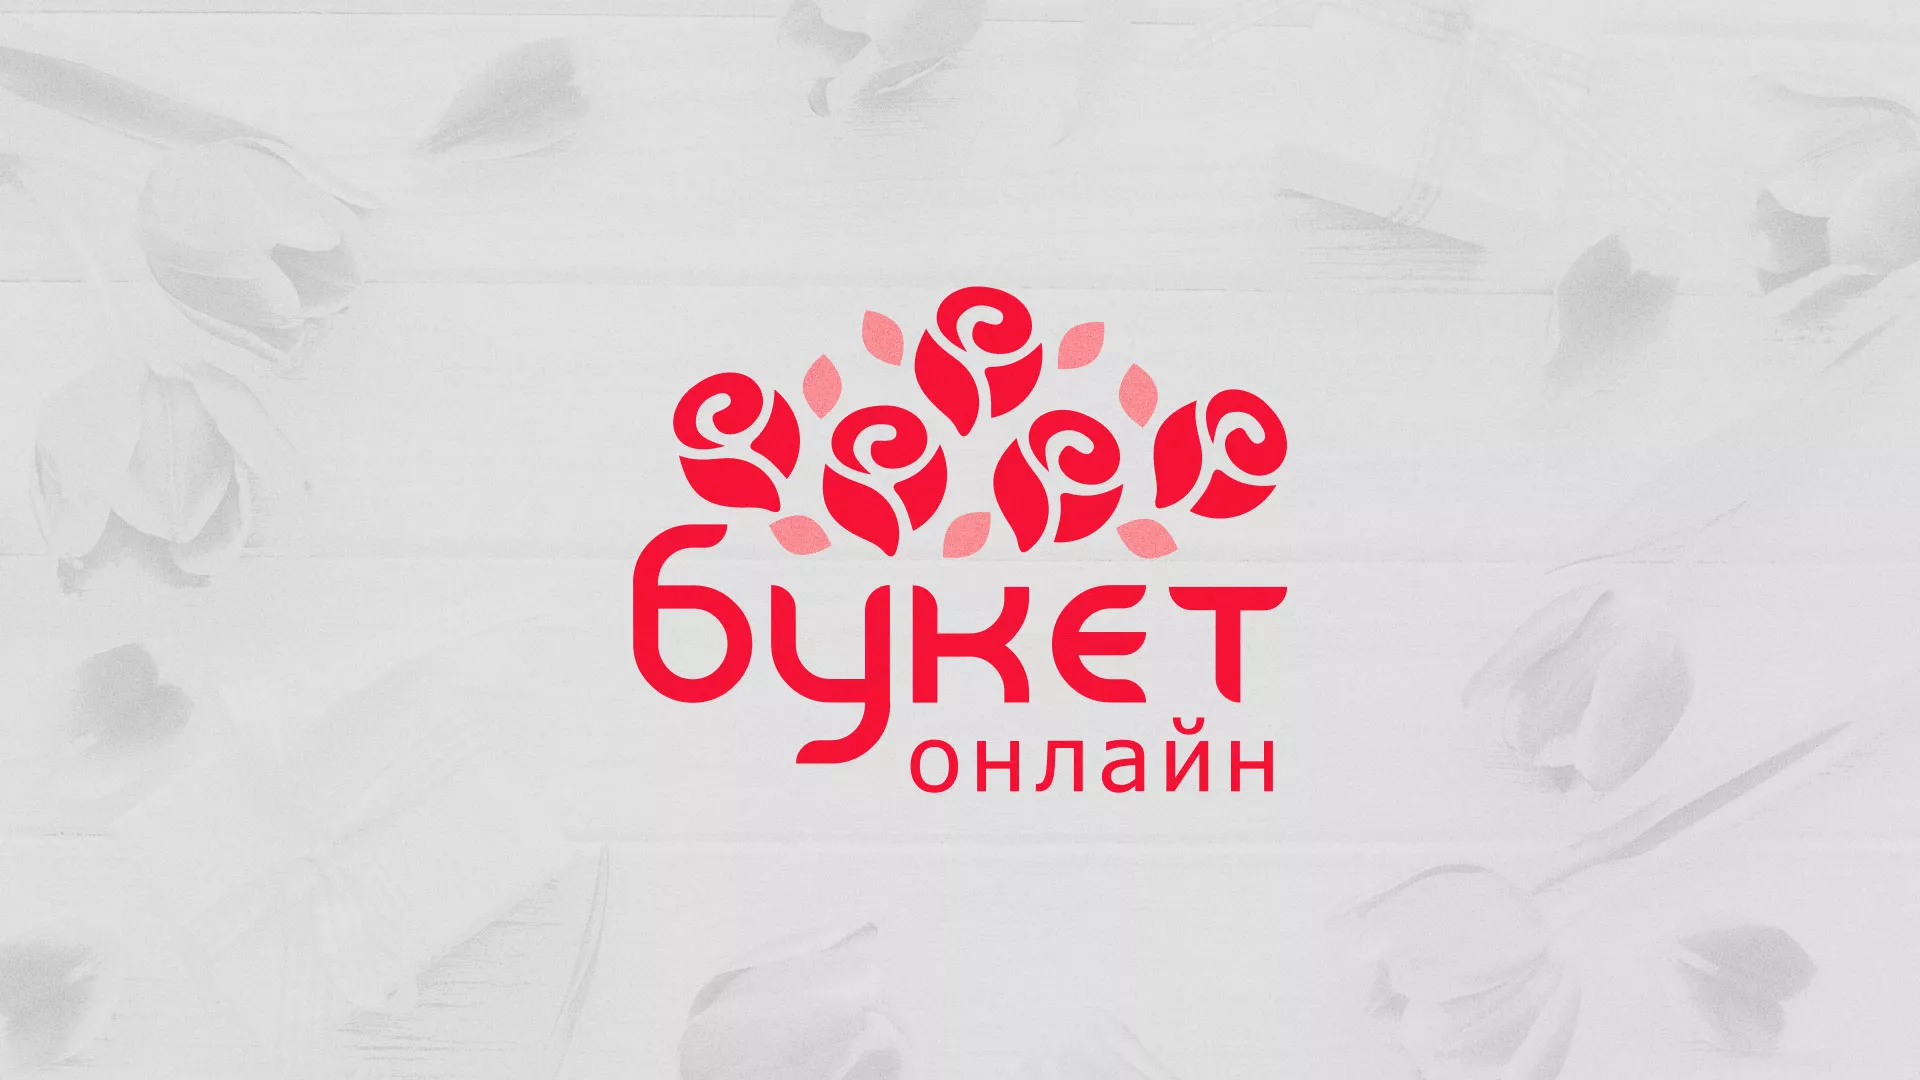 Создание интернет-магазина «Букет-онлайн» по цветам в Меленках